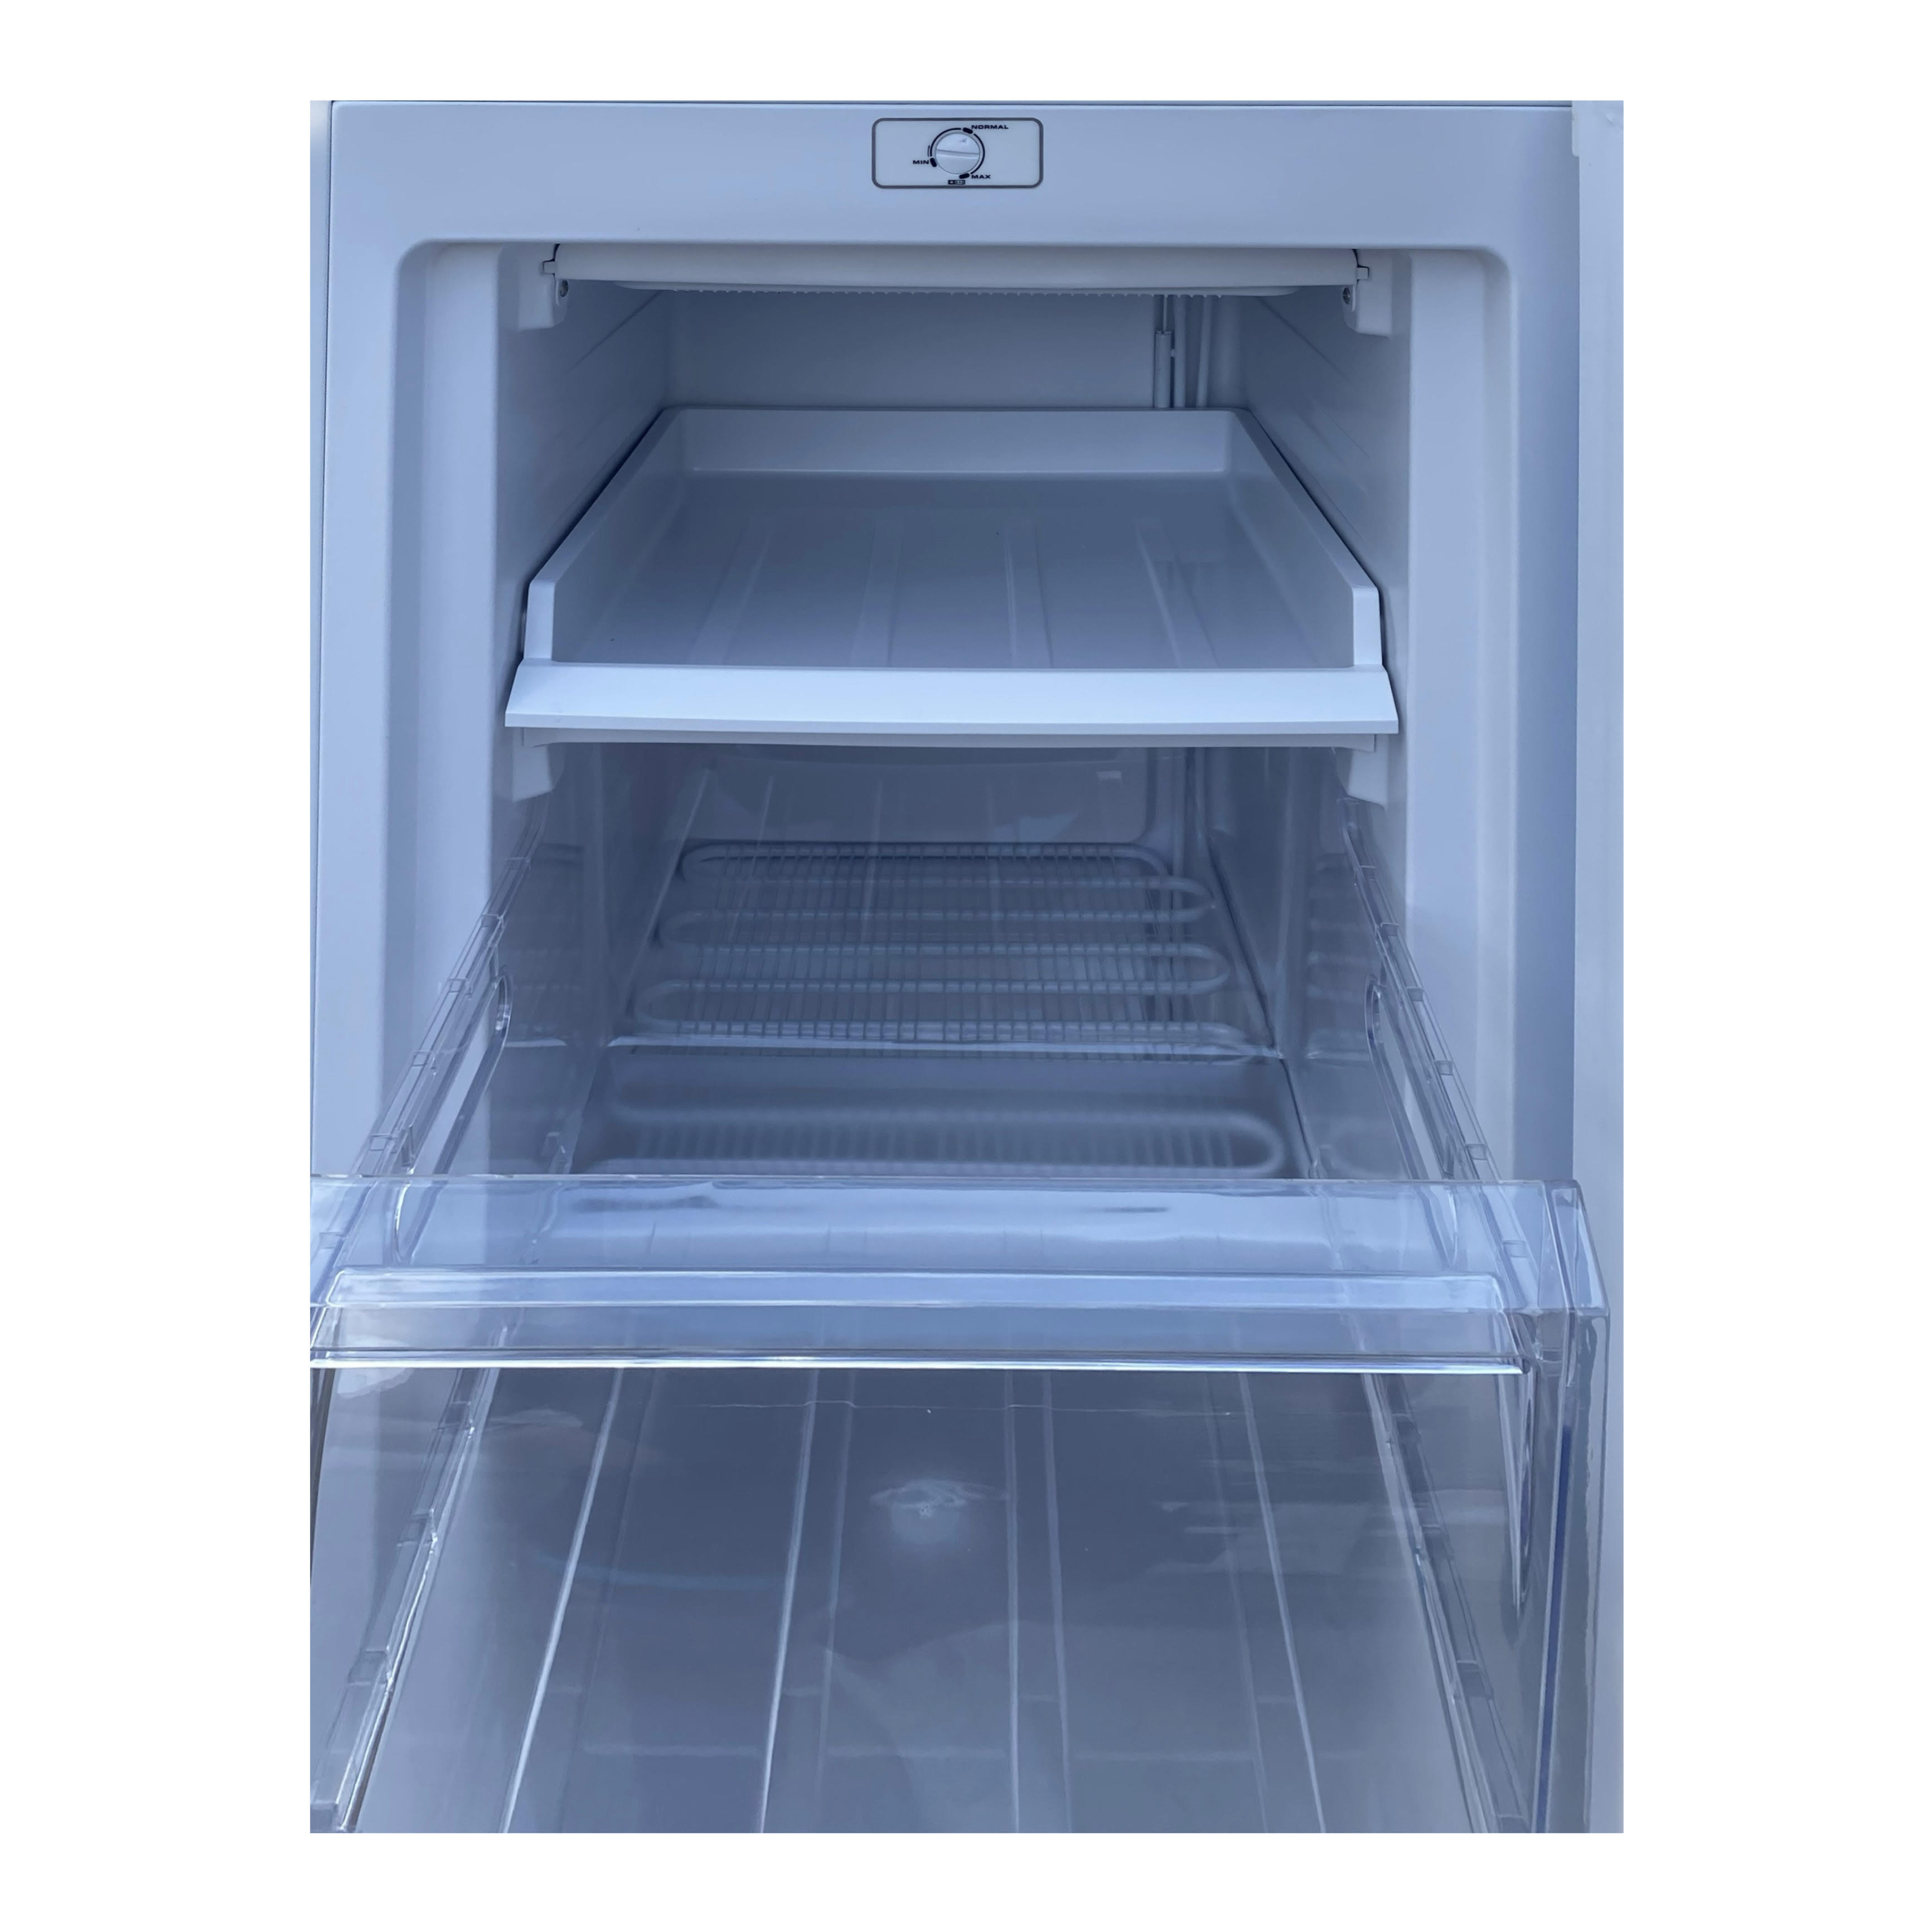 Freezer Mystery MUF-170